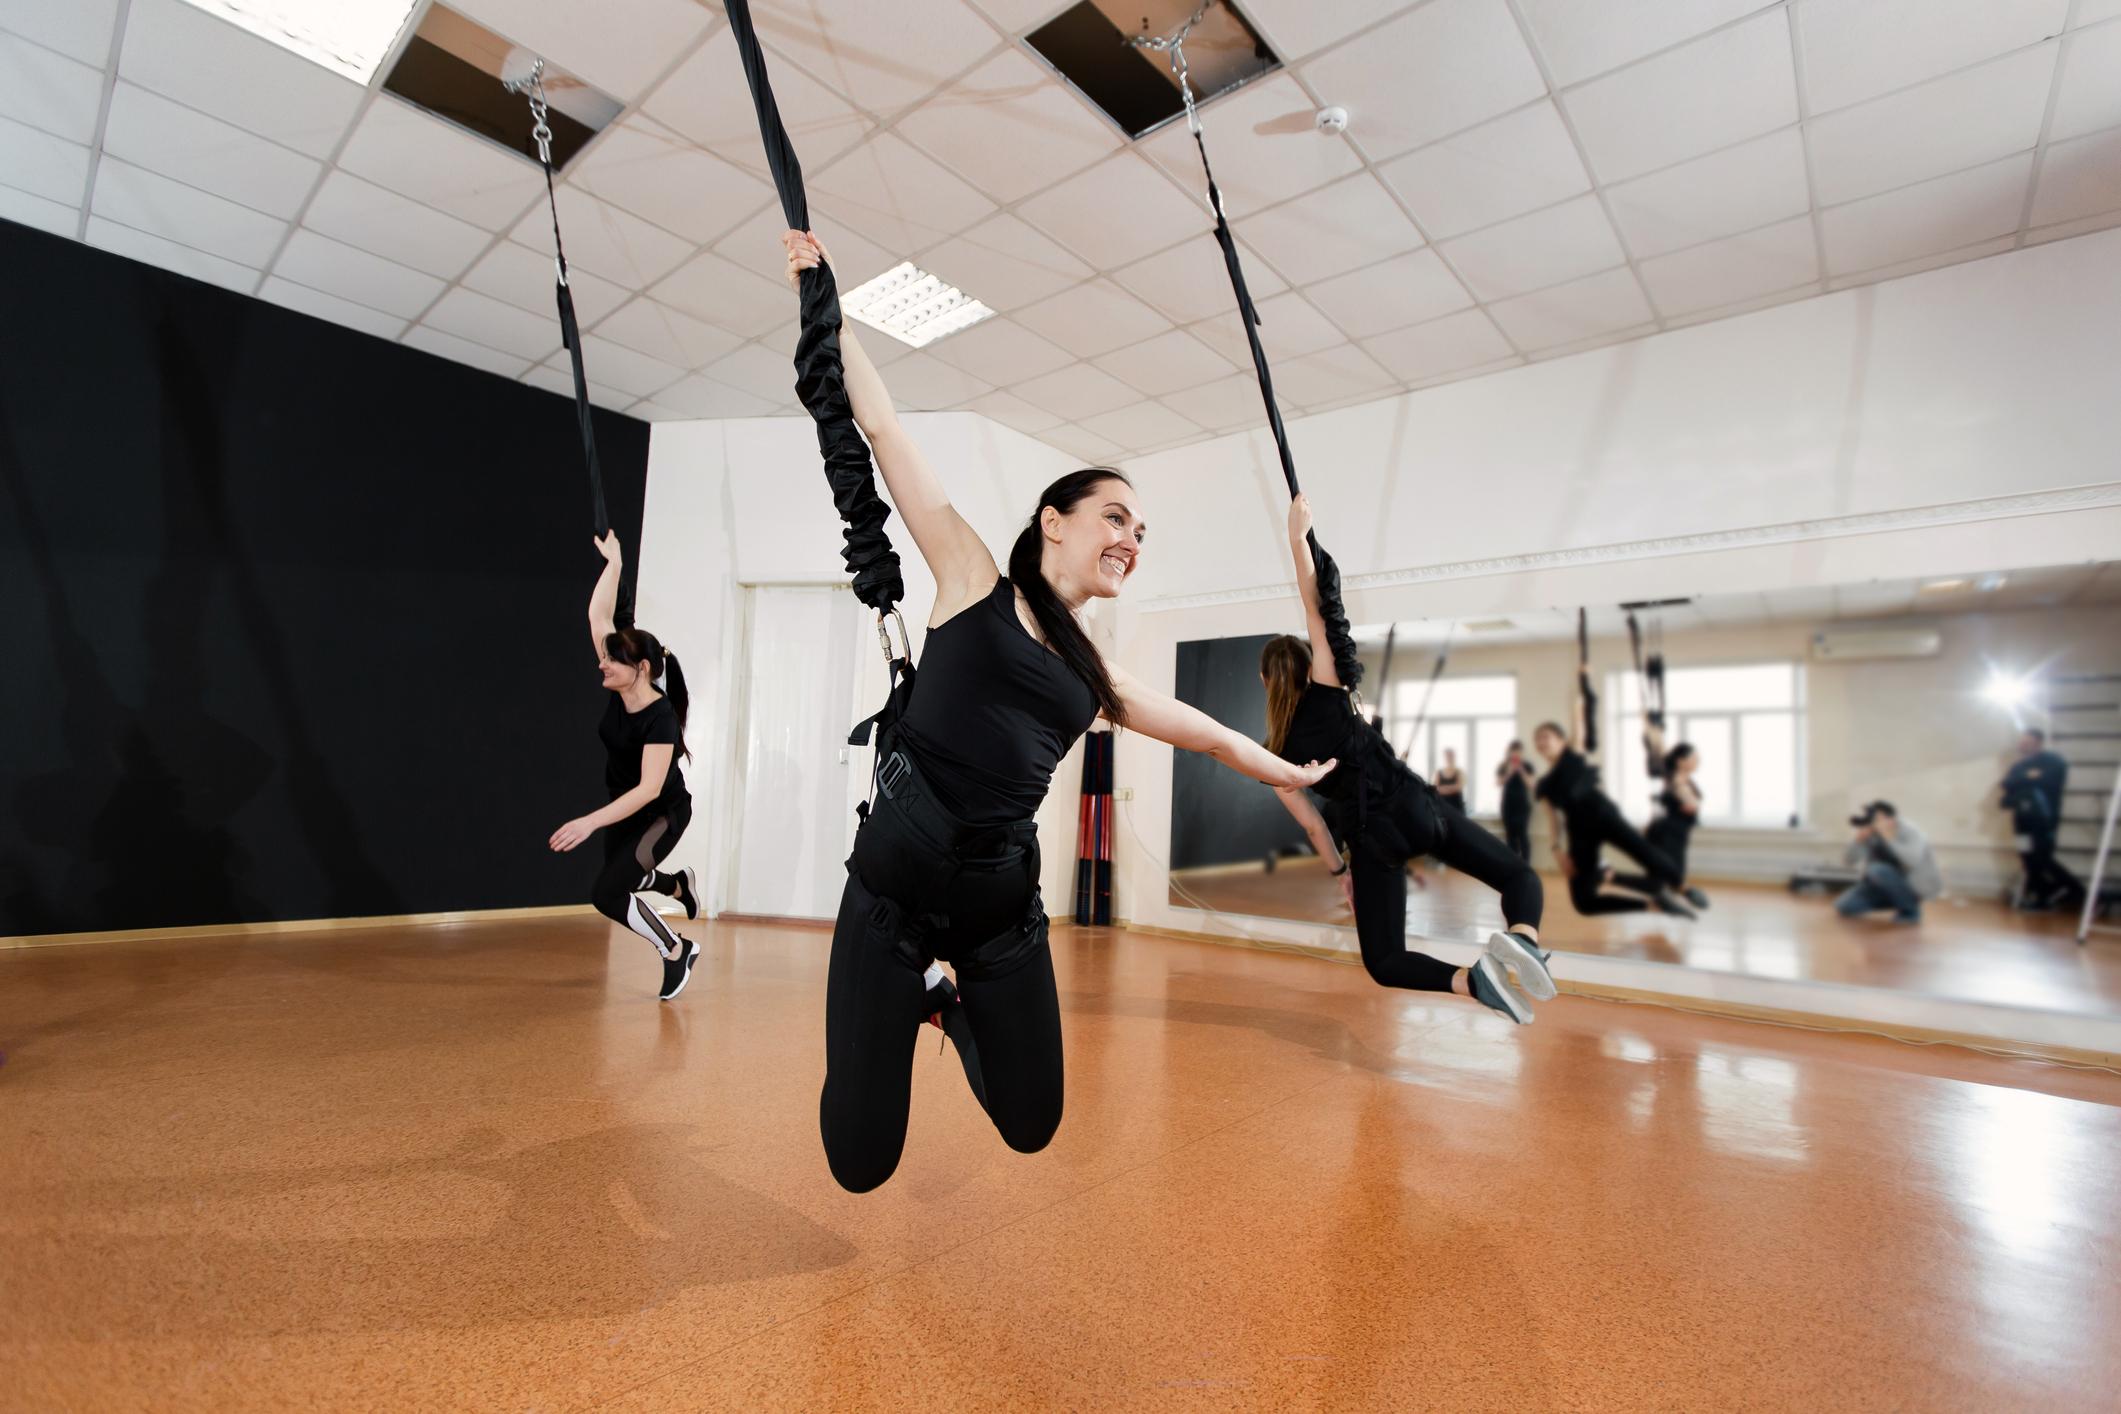 Photos. Fly Work : ils pratiquent la danse suspendus à un élastique pour  avoir l'impression de voler